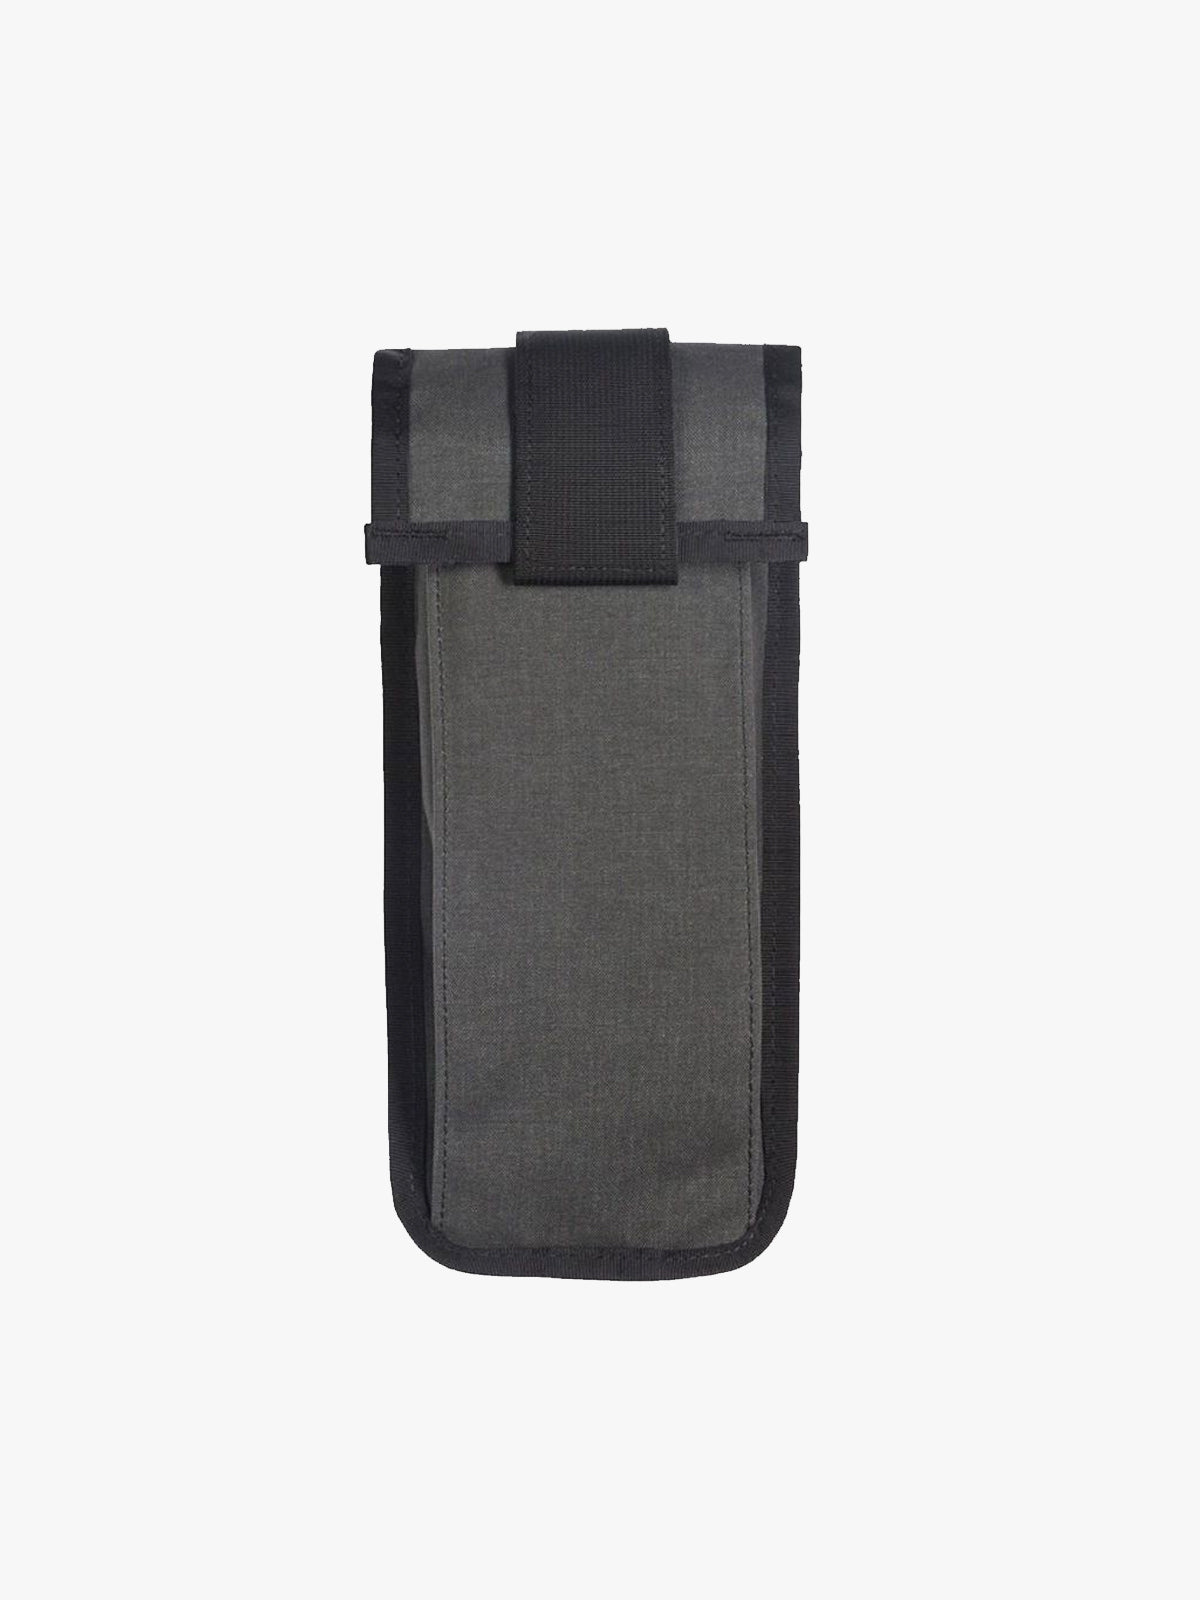 Arkiv Vertical Rolltop Pocket från Mission Workshop - vädertåliga väskor och tekniska kläder - San Francisco och Los Angeles - byggda för att tåla - garanterade för alltid